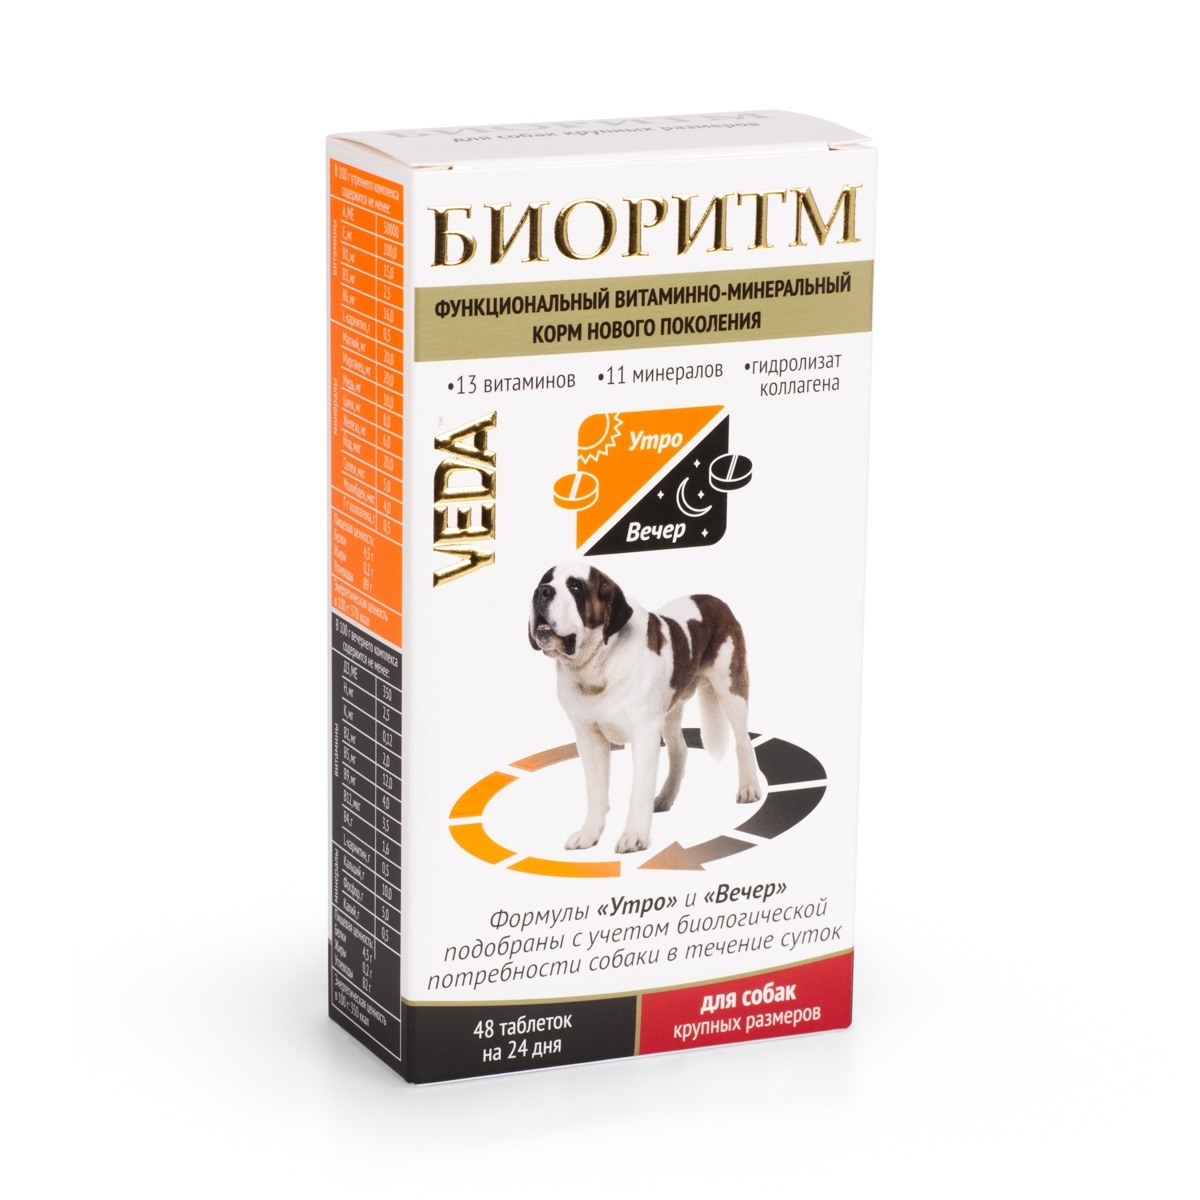 Веда Веда биоритм витамины для собак крупных пород (20 г) веда веда шоколад темный с инулином для собак 15 г